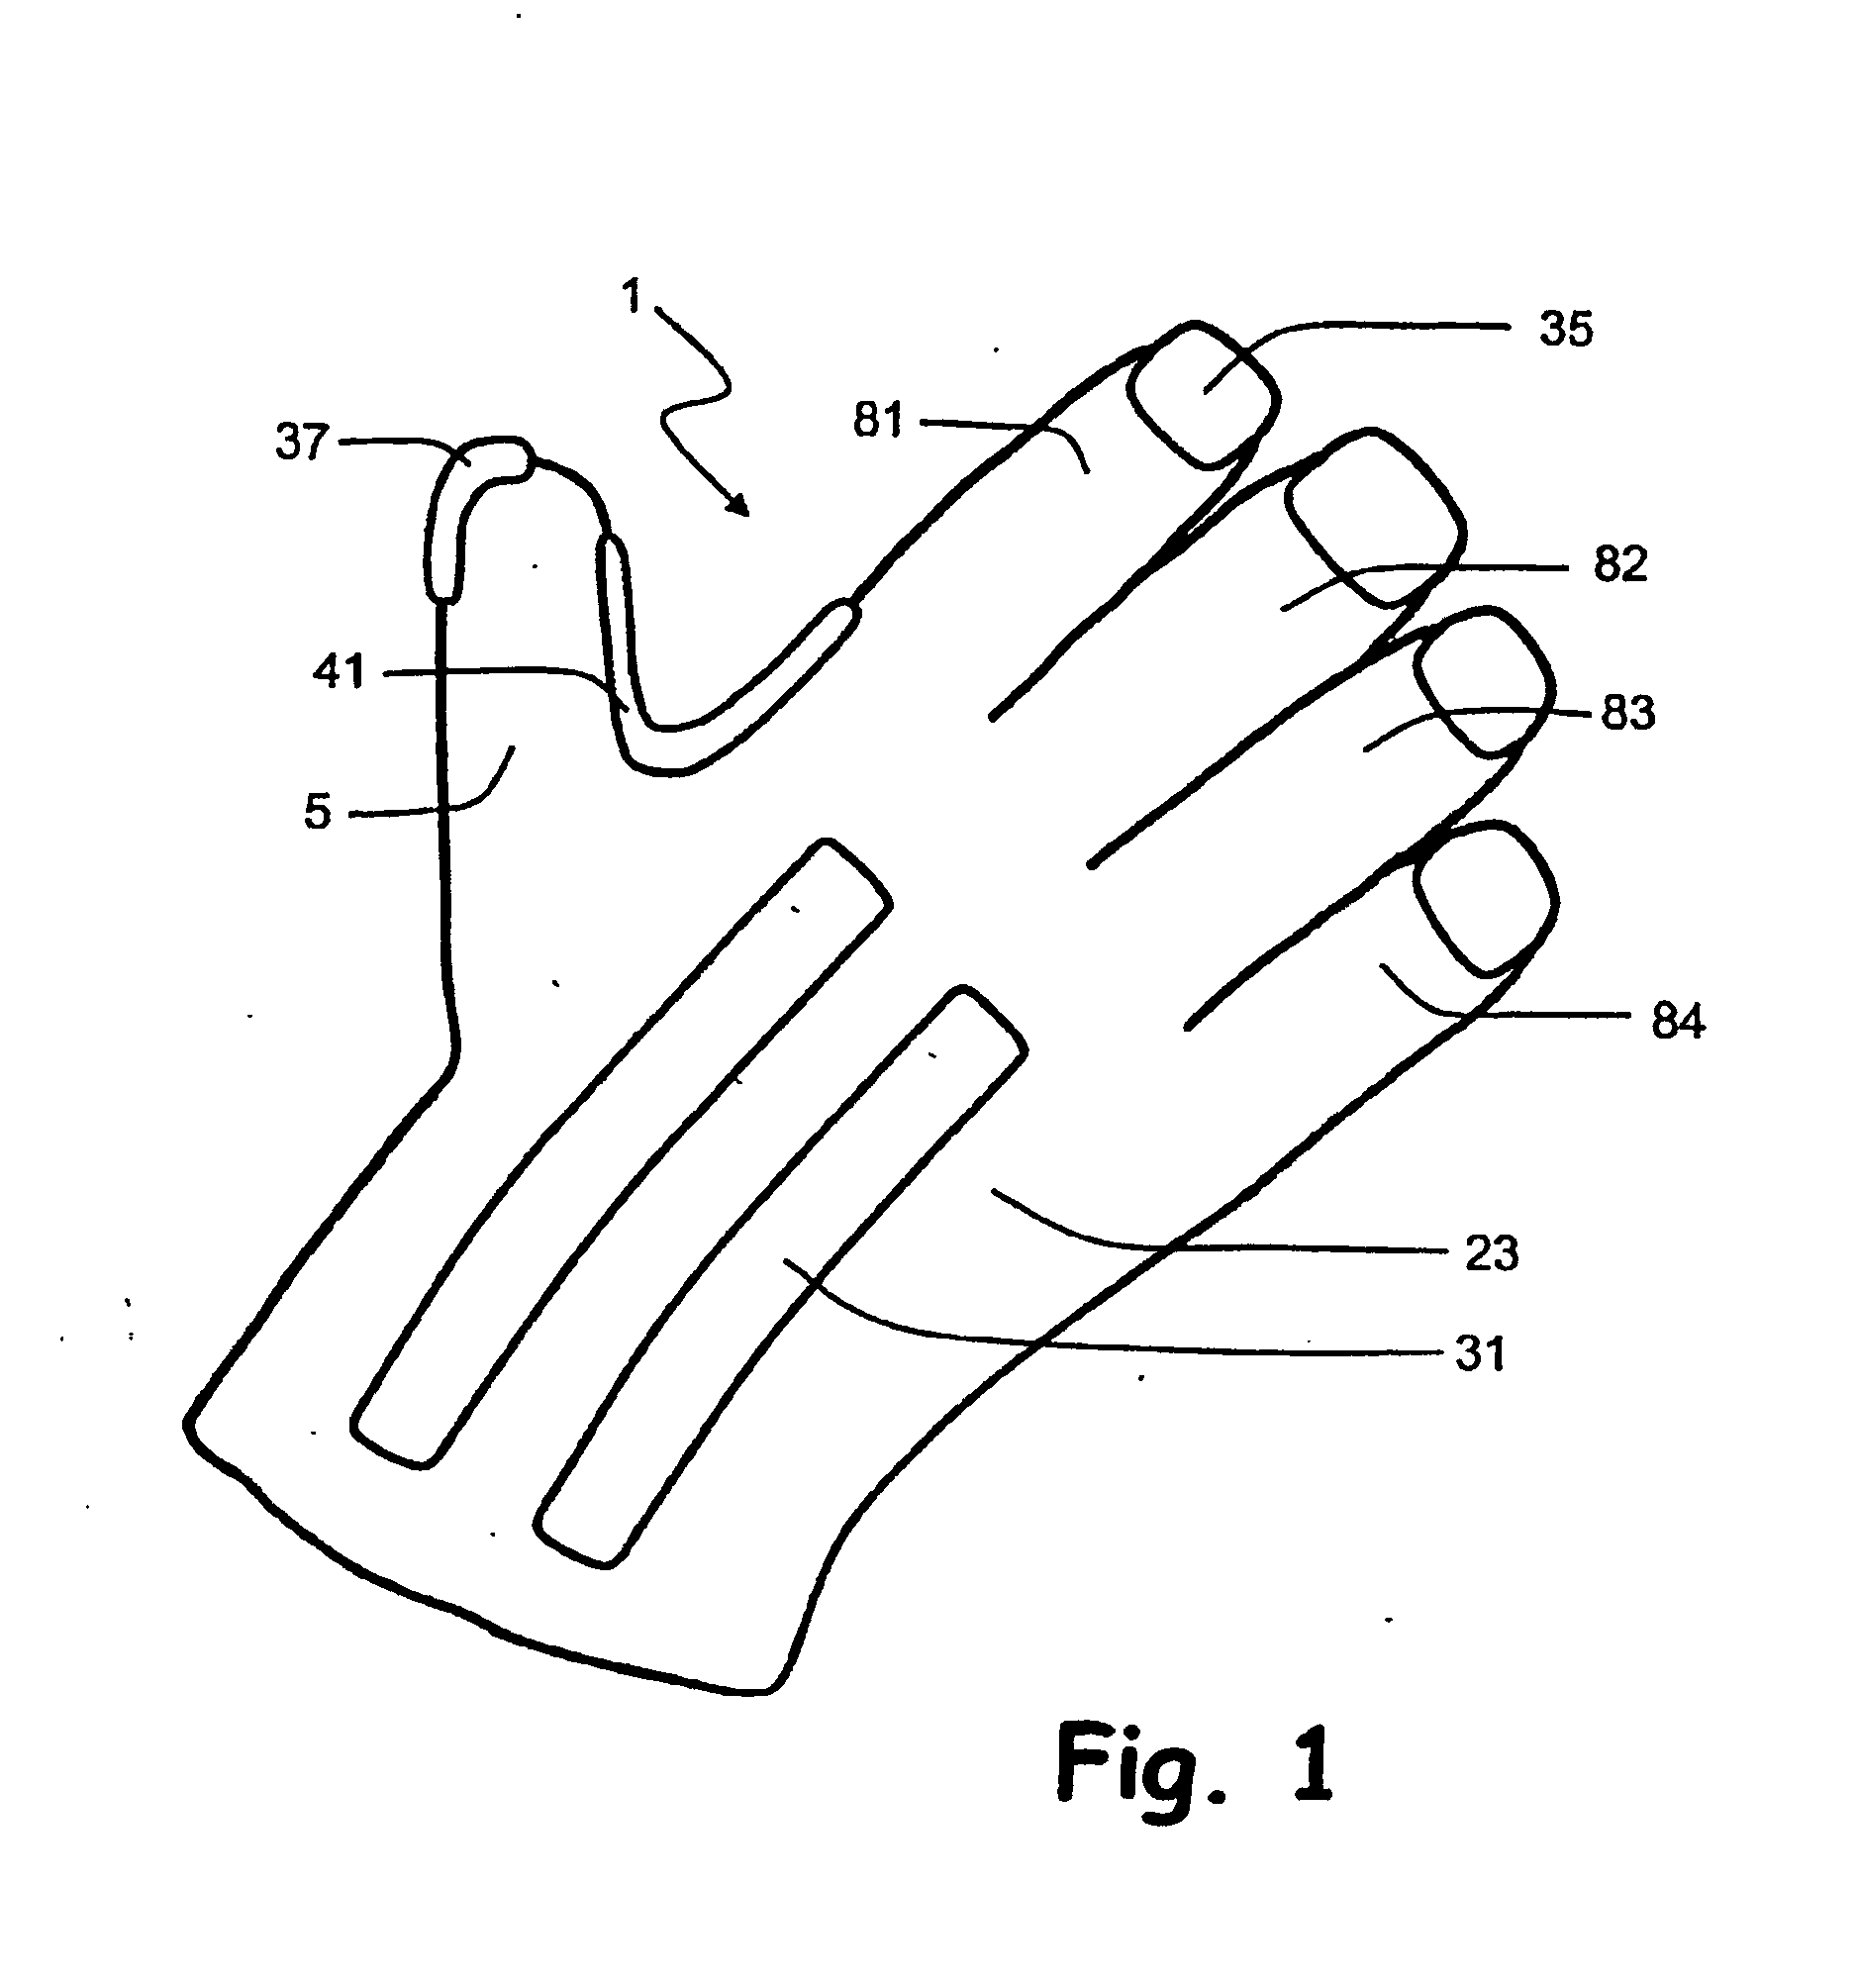 Handwear incorporating attachment element